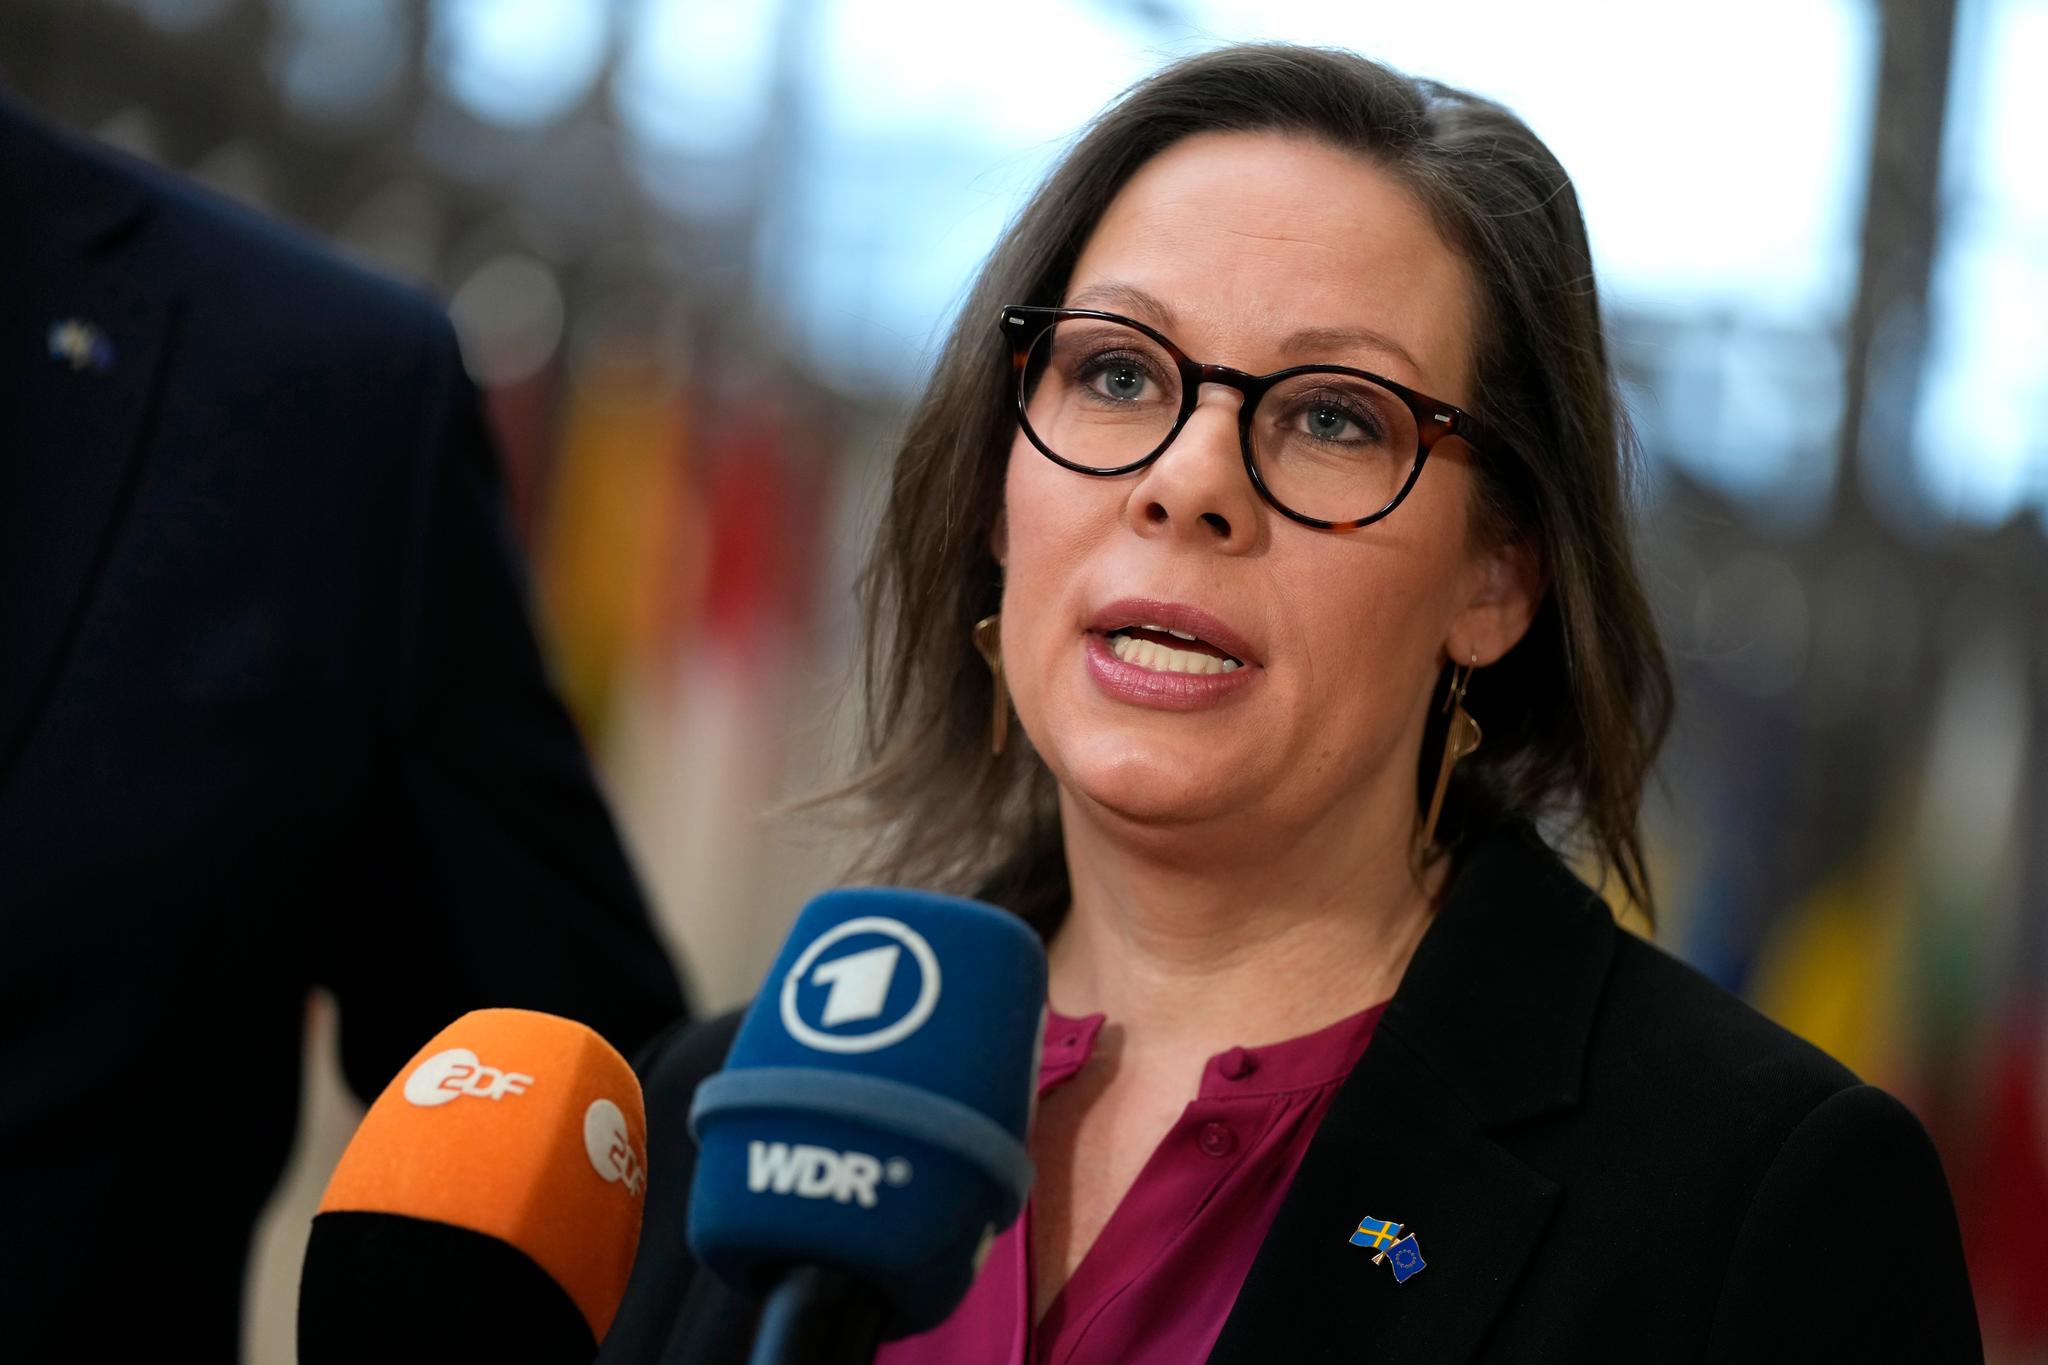 Sveriges migrasjonsminister Maria Malmer Stenergard har i det siste dukket opp i flere internasjonale medier med sitt budskap om en strengere svensk innvandringspolitikk. 